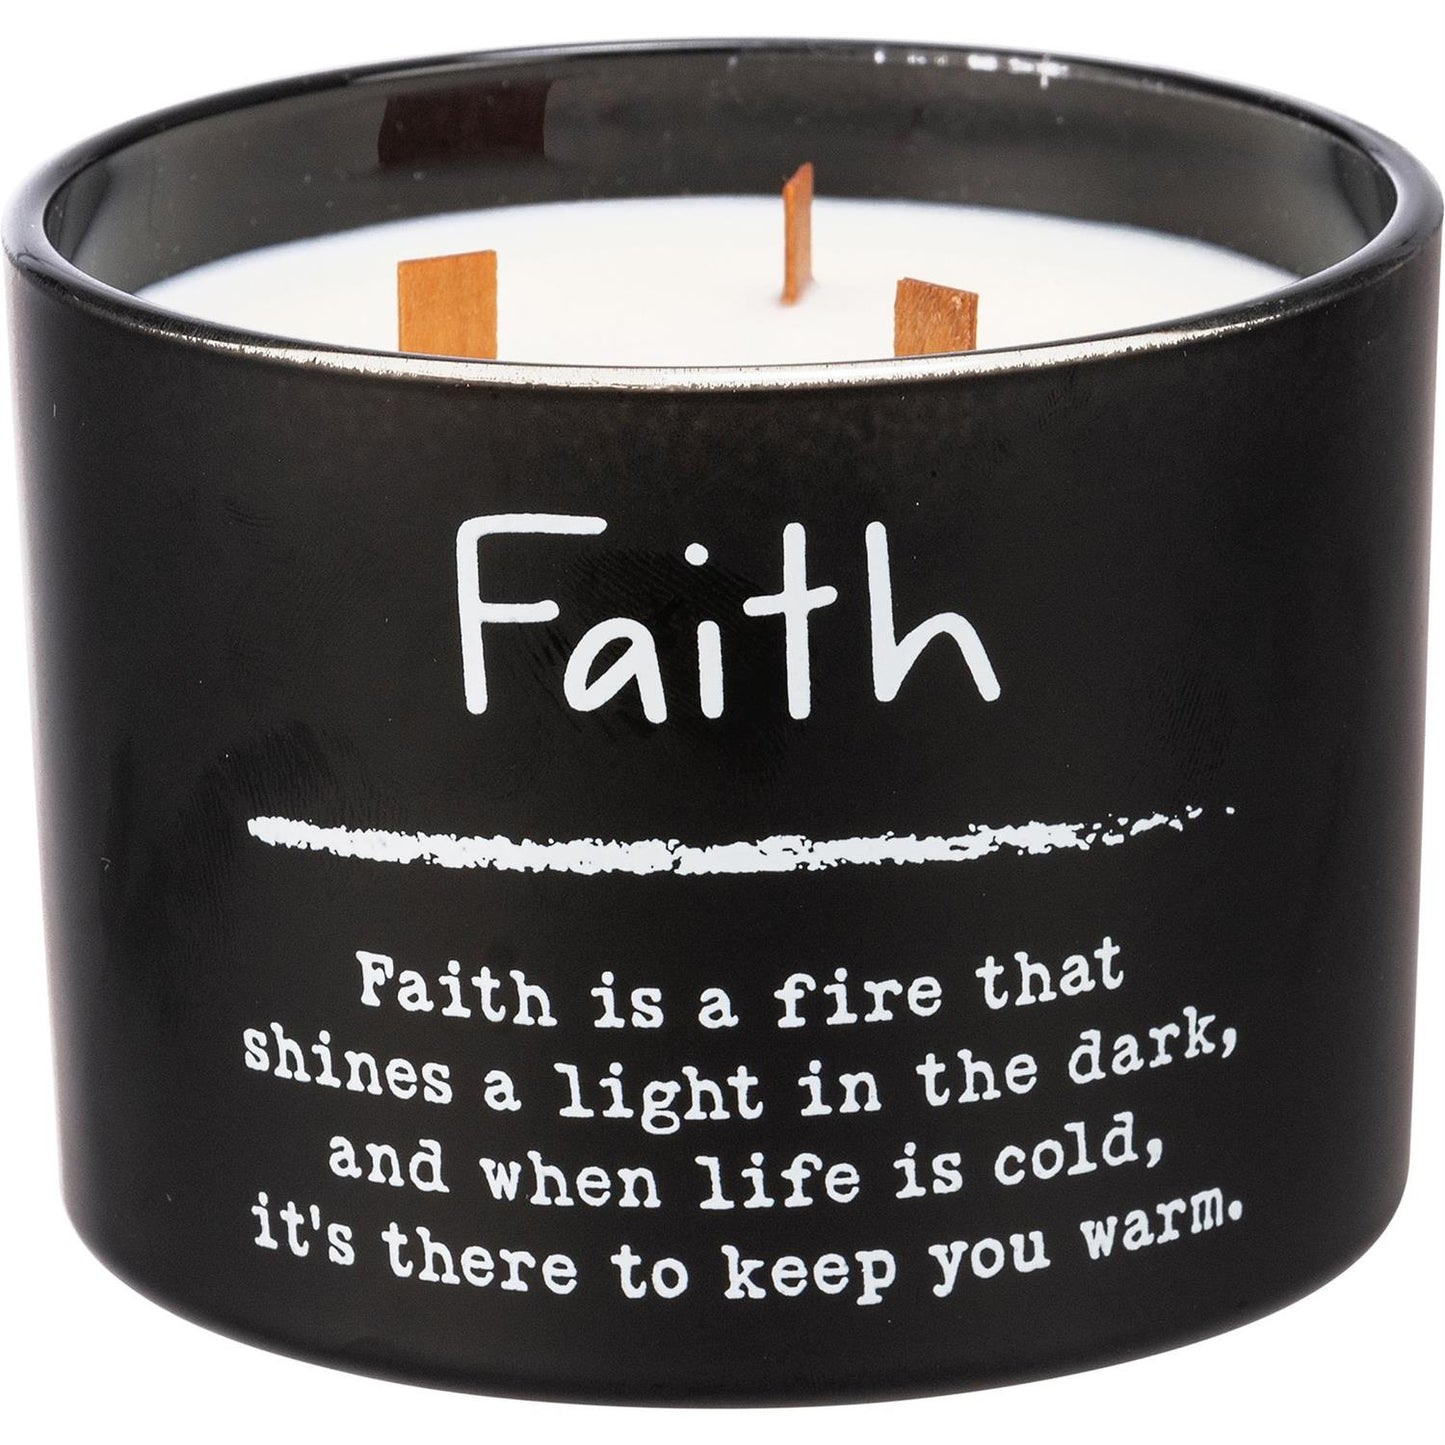 Faith Jar Candle